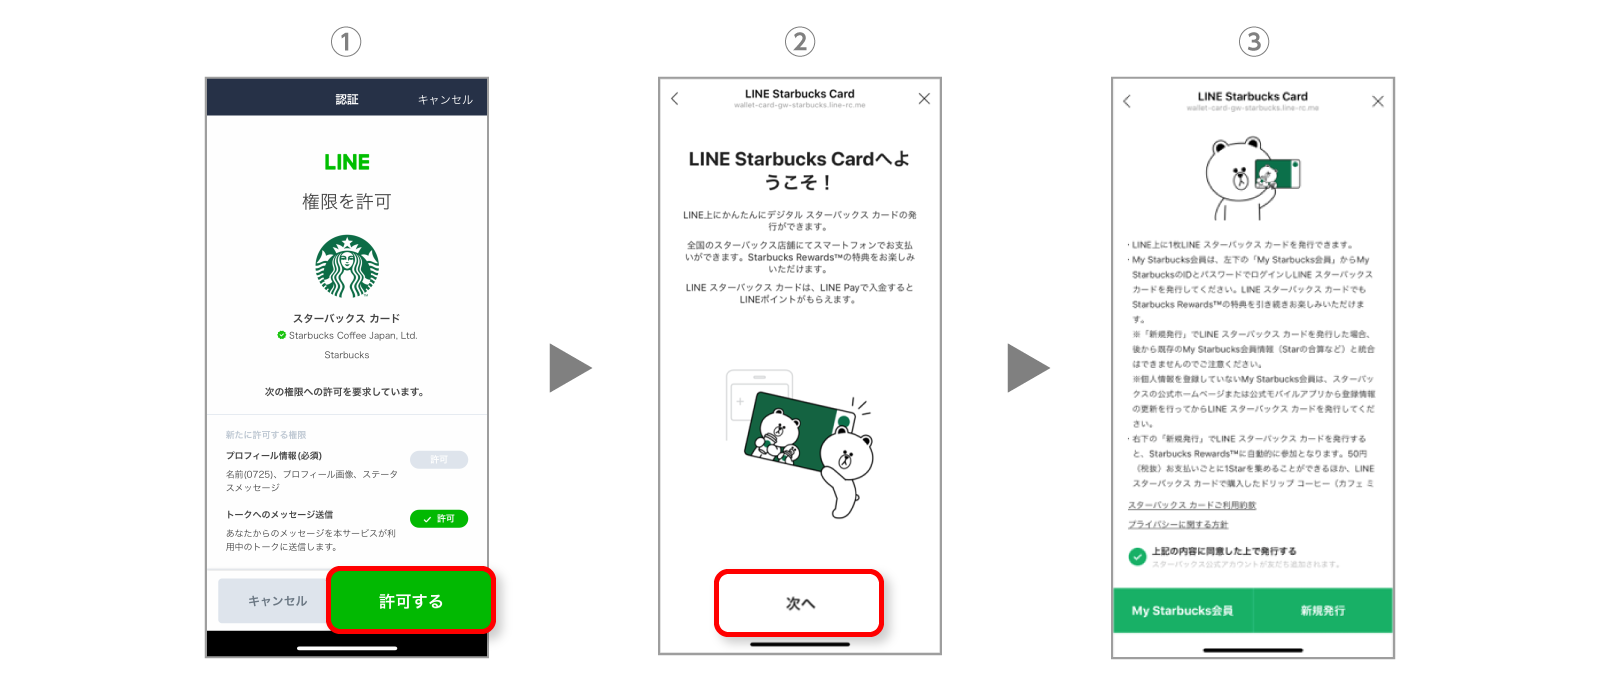 Line スターバックス カード への入金に使える500円分のline Payクーポンプレゼント Line Pay 公式ブログ